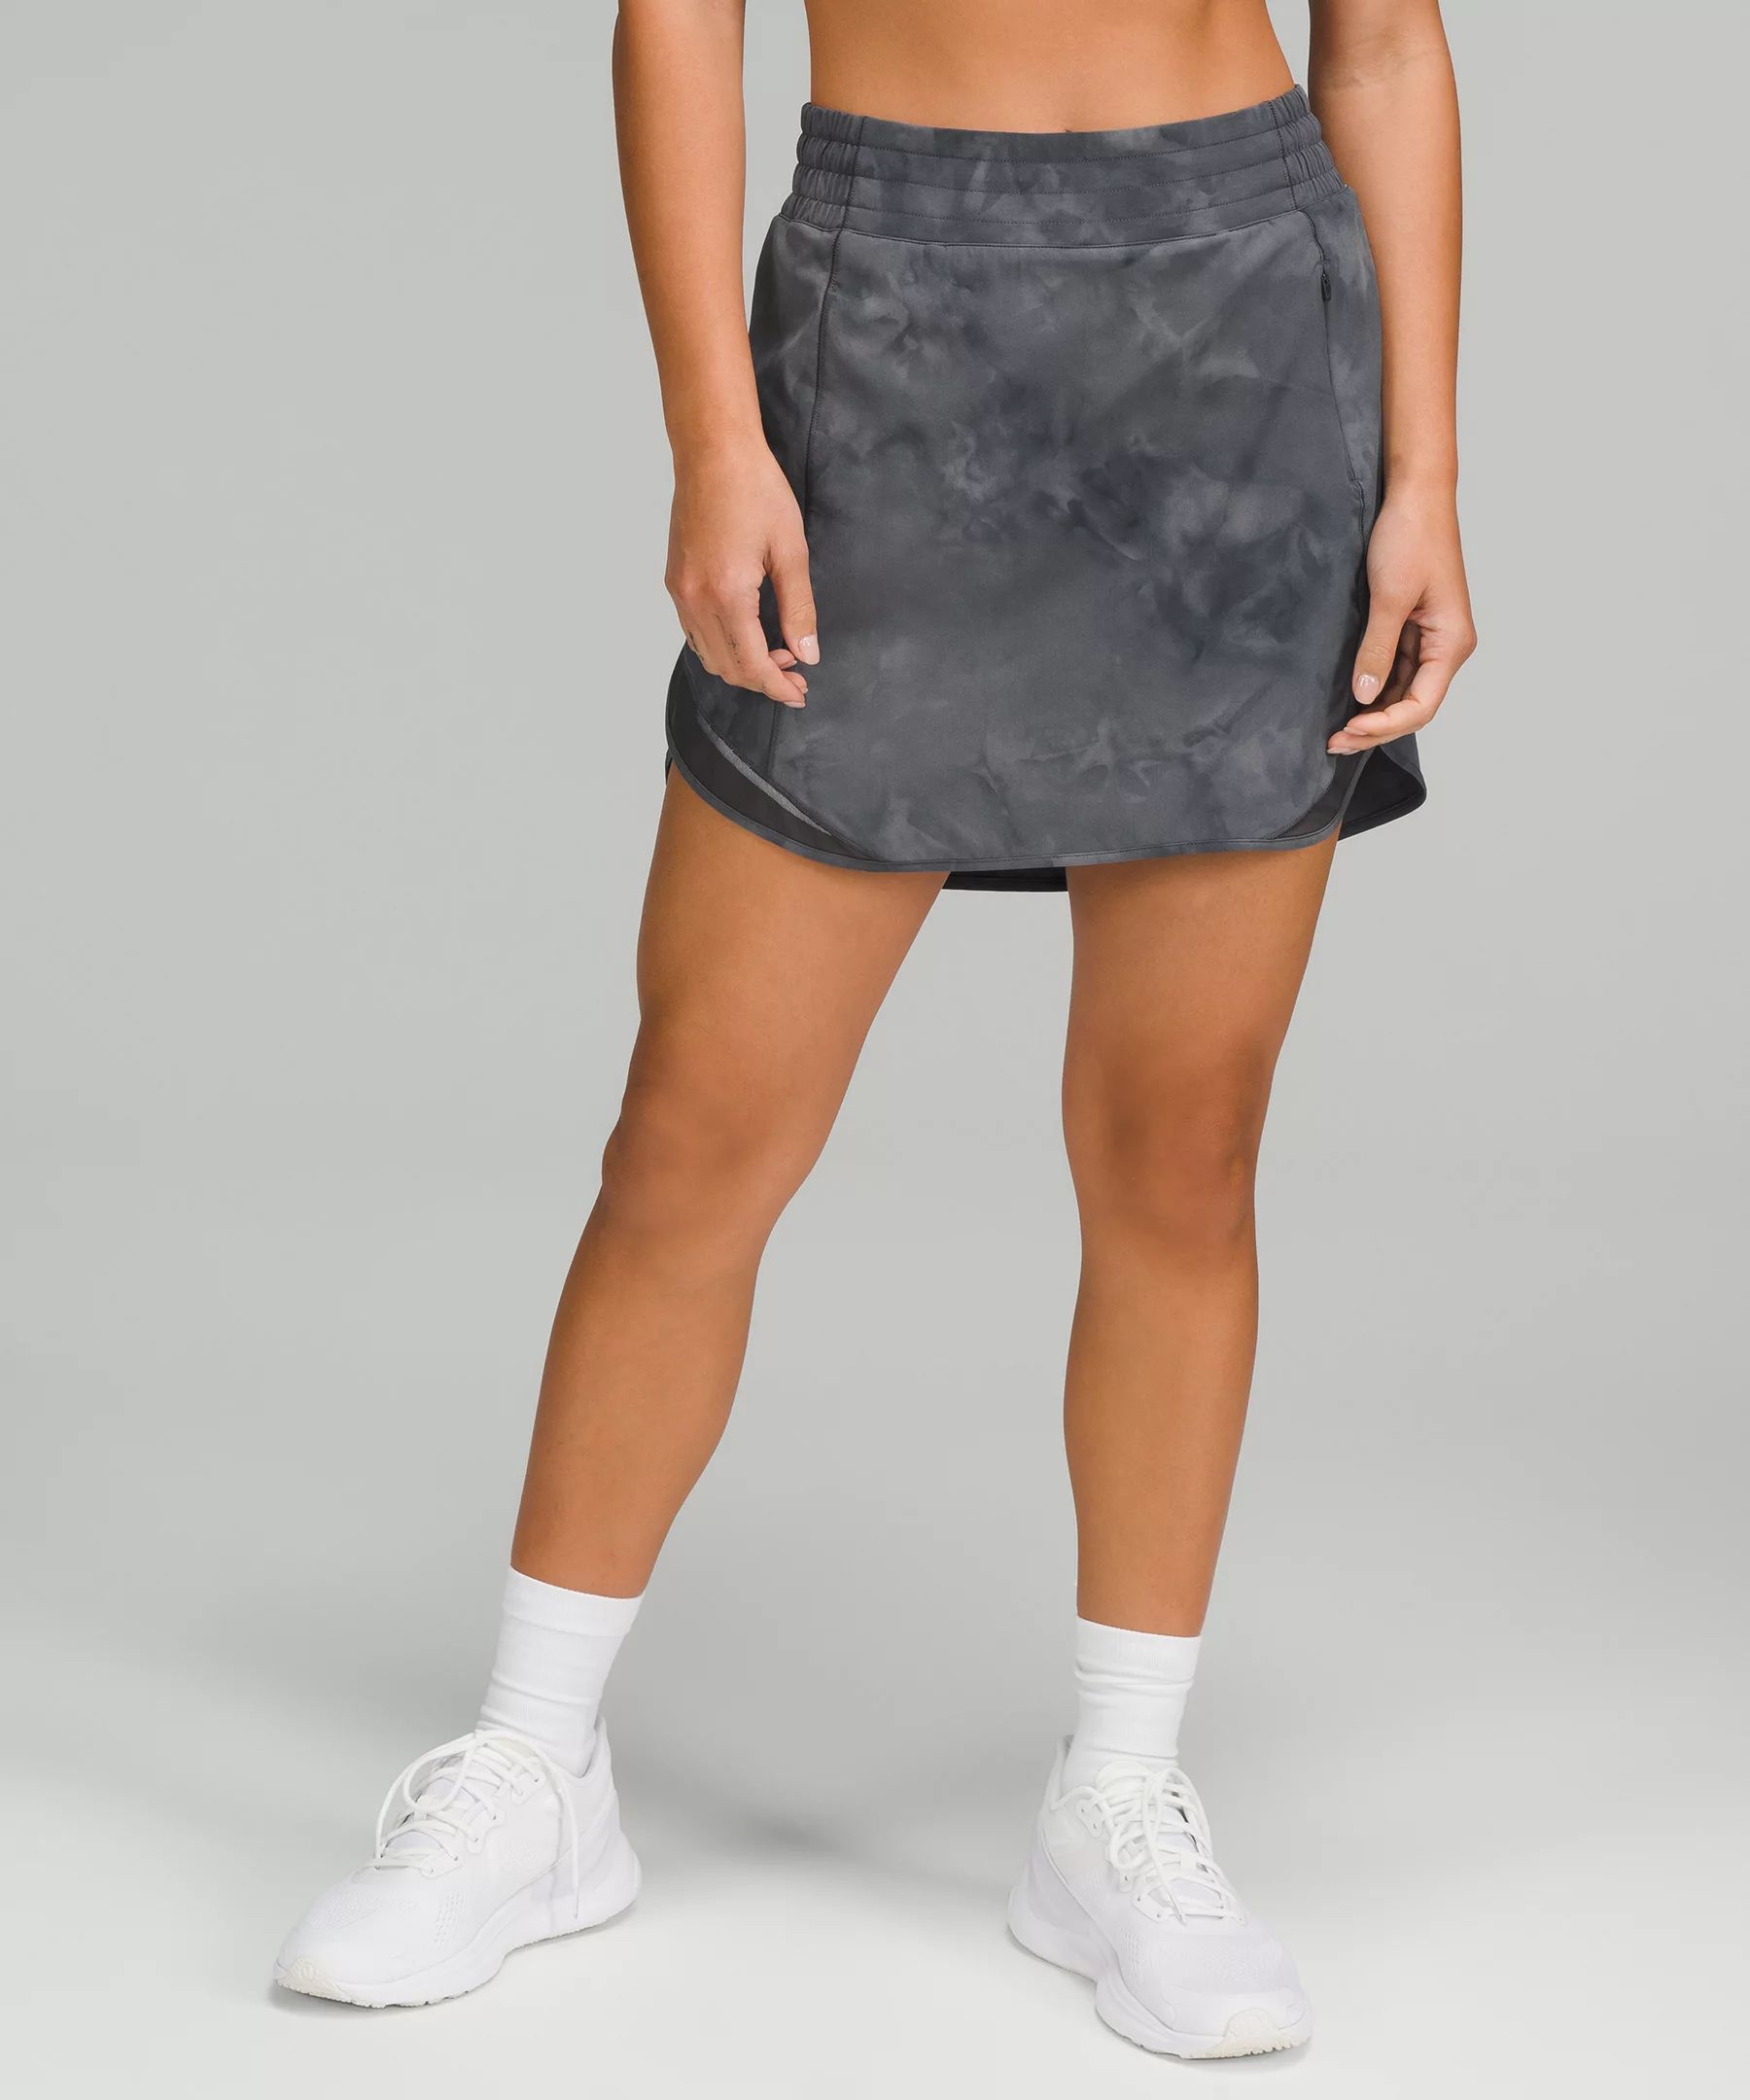 Hotty Hot High-Rise Skirt Long | Lululemon (US)